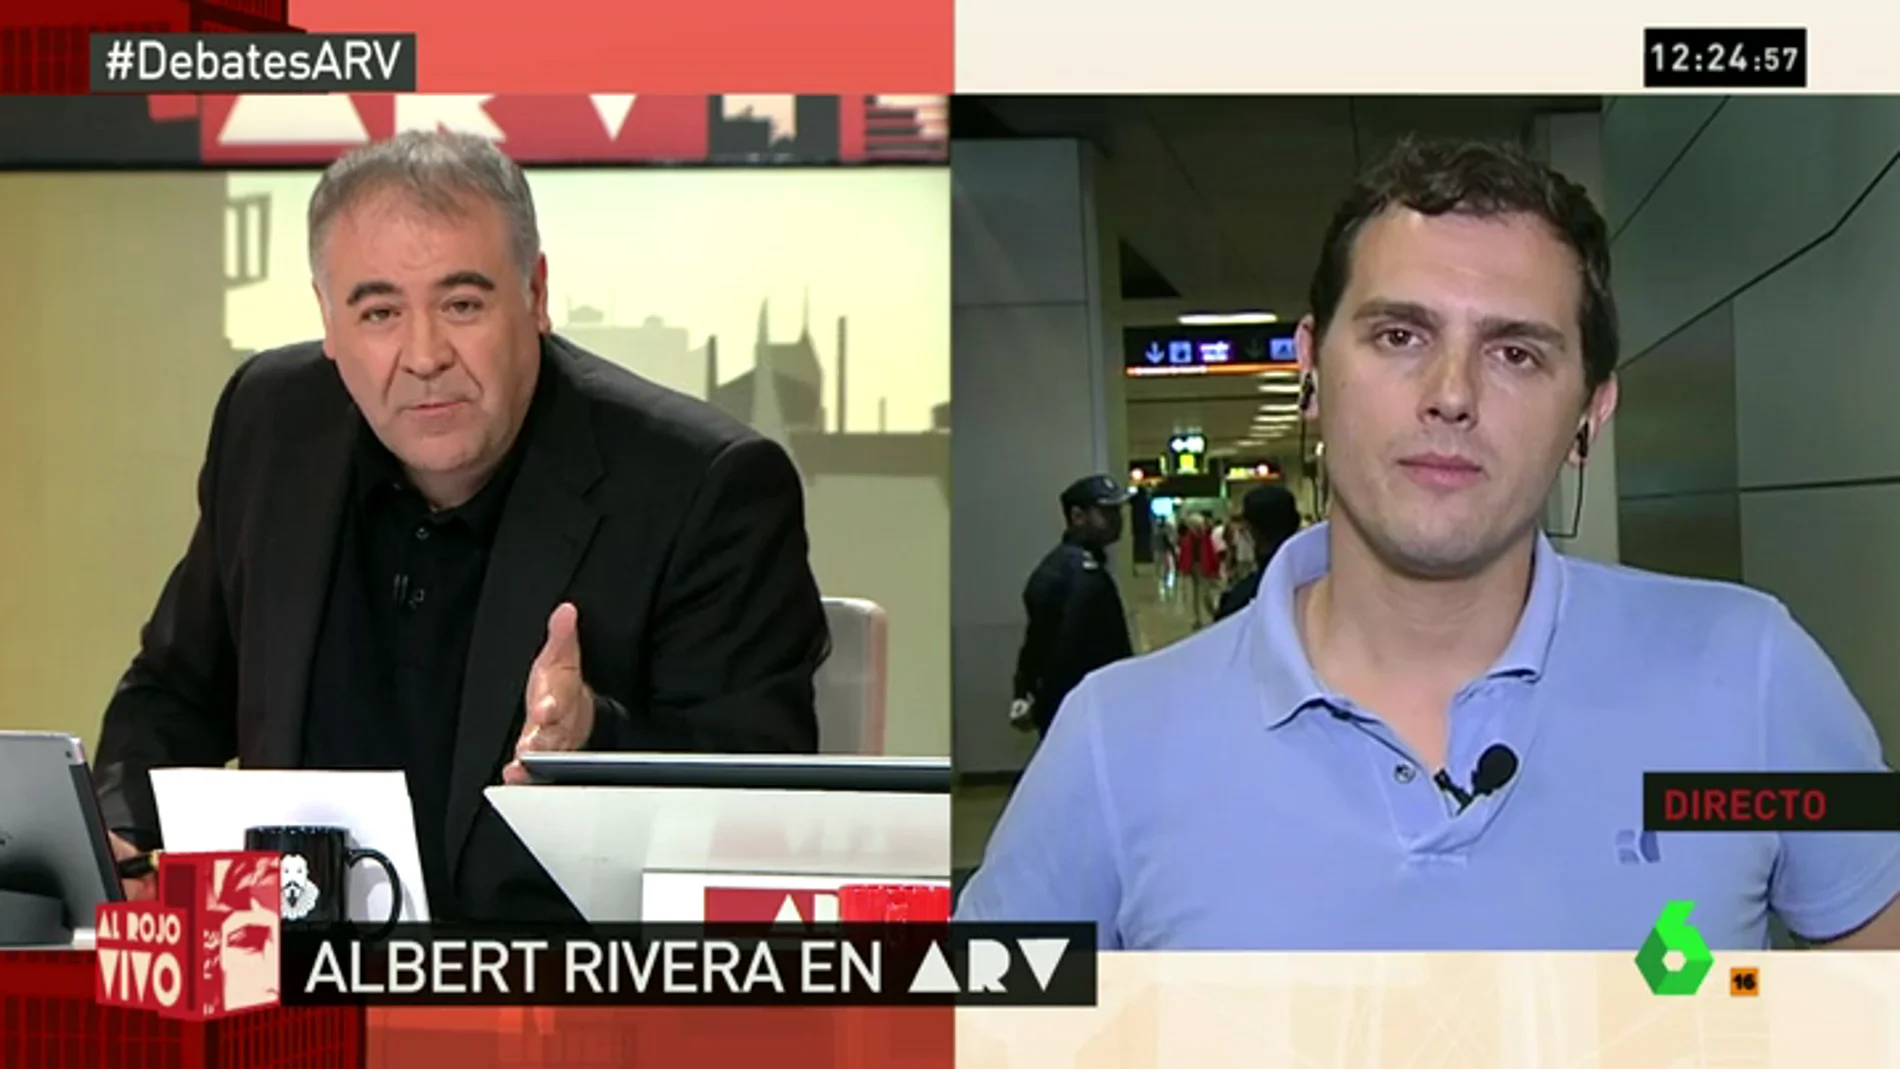 Rivera en ARV